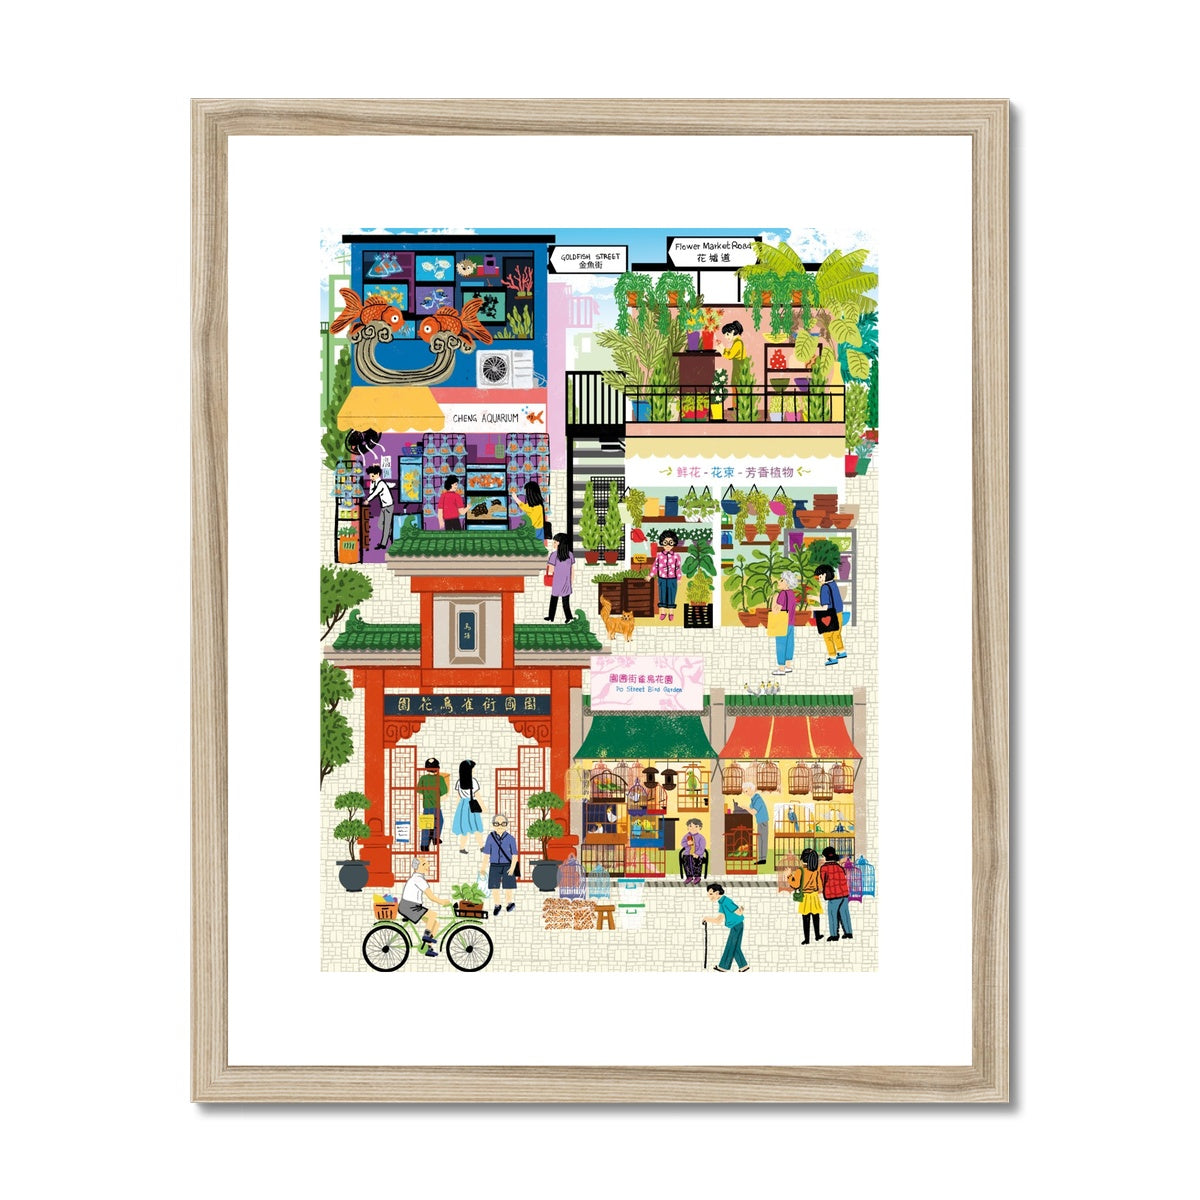 Fantasy Cityscapes - Hong Kong Markets Framed & Mounted Print